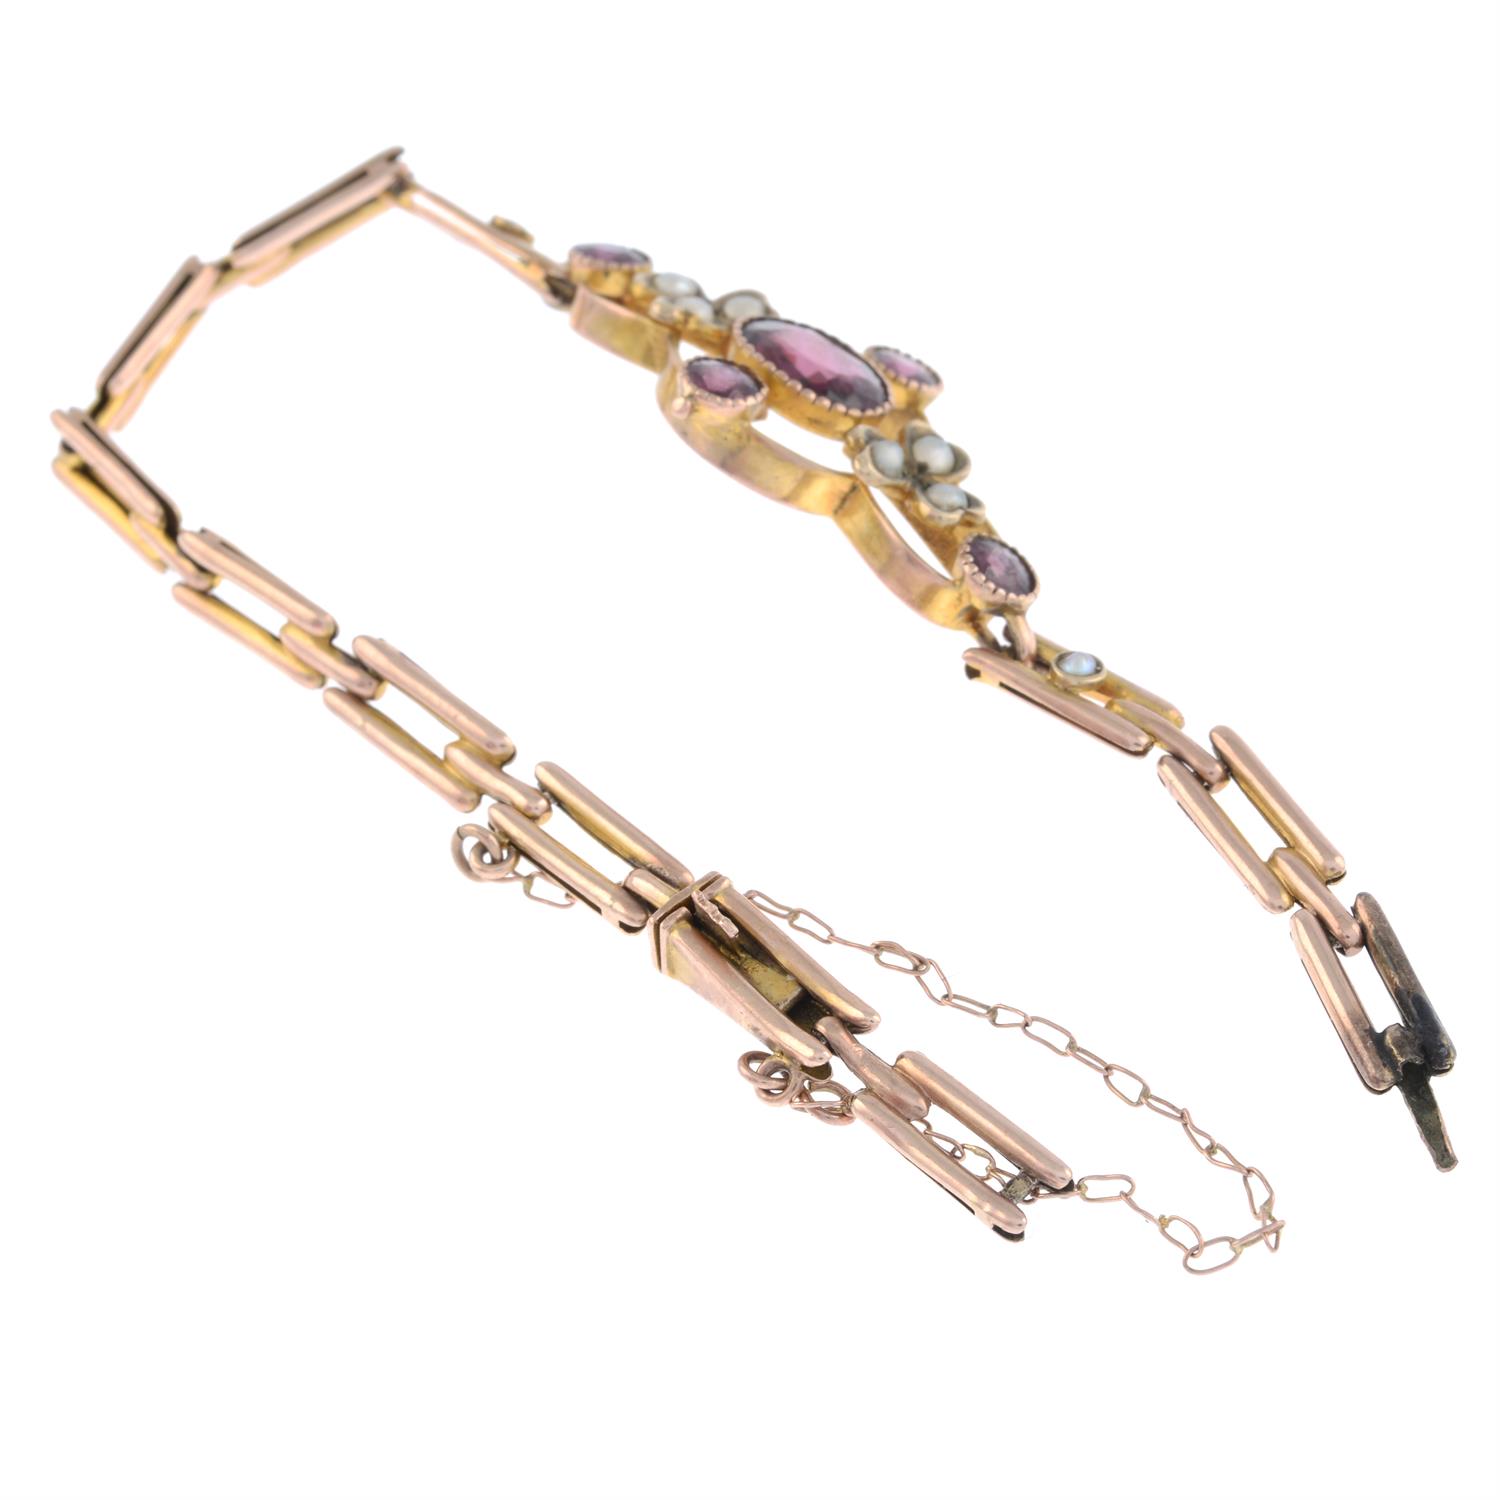 Garnet & split pearl bracelet, AF - Image 2 of 2